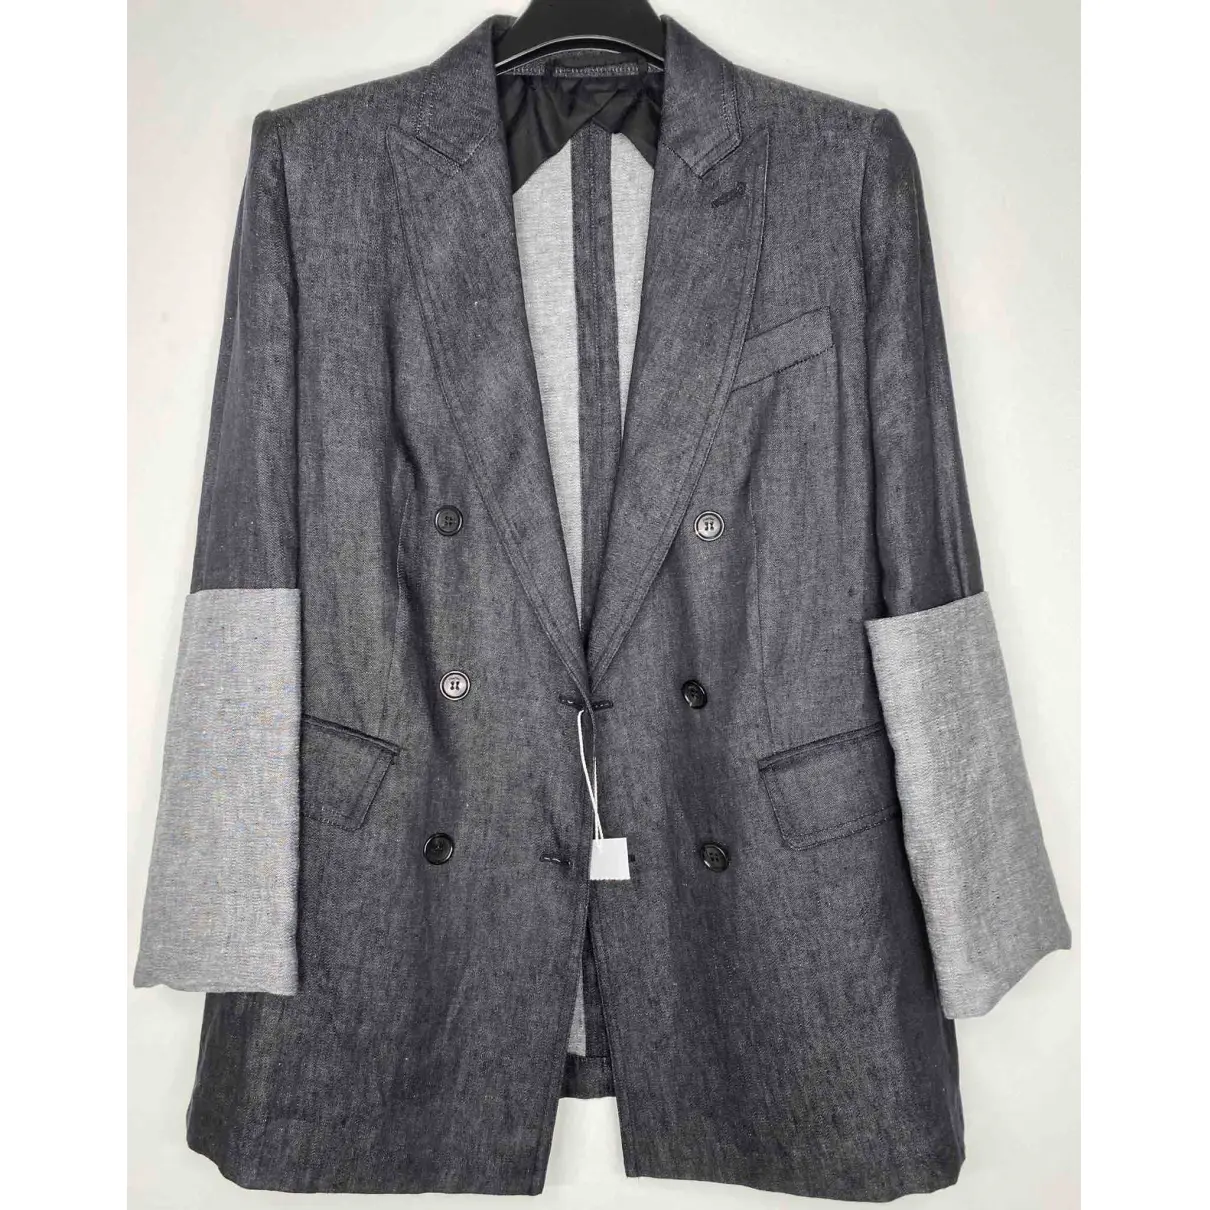 Buy Max Mara Linen suit jacket online